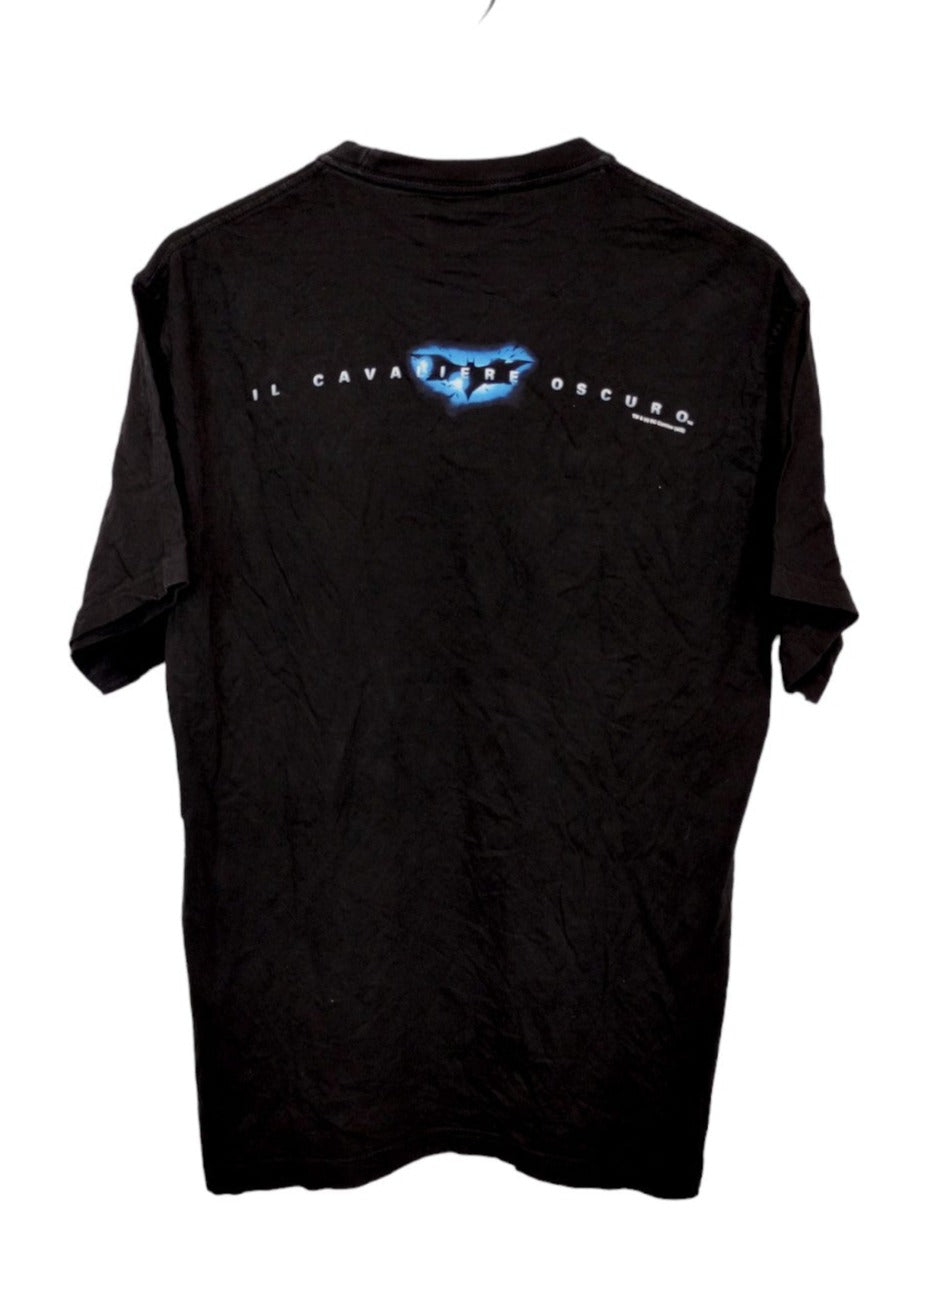 Ανδρική Μπλούζα - T- Shirt LIFE σε Μαύρο χρώμα (Medium-Large)